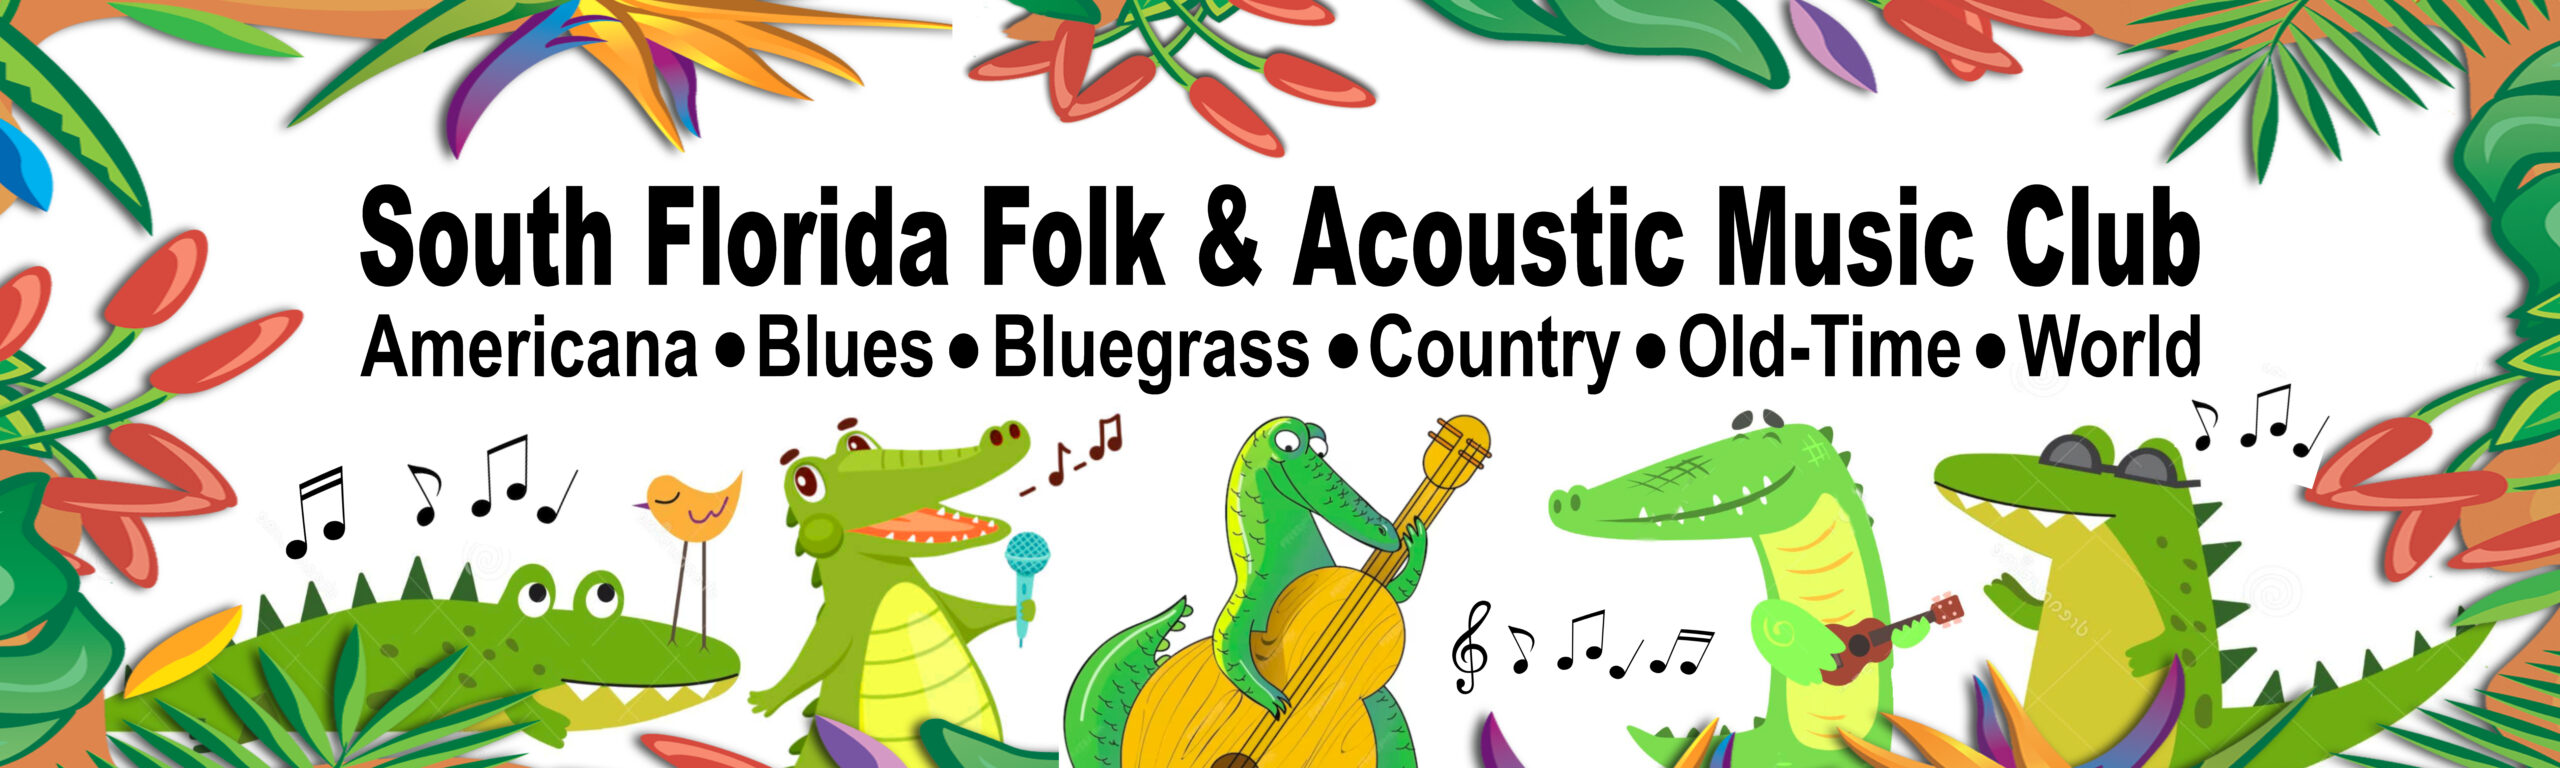 South Florida Folk & Acoustic Music Club